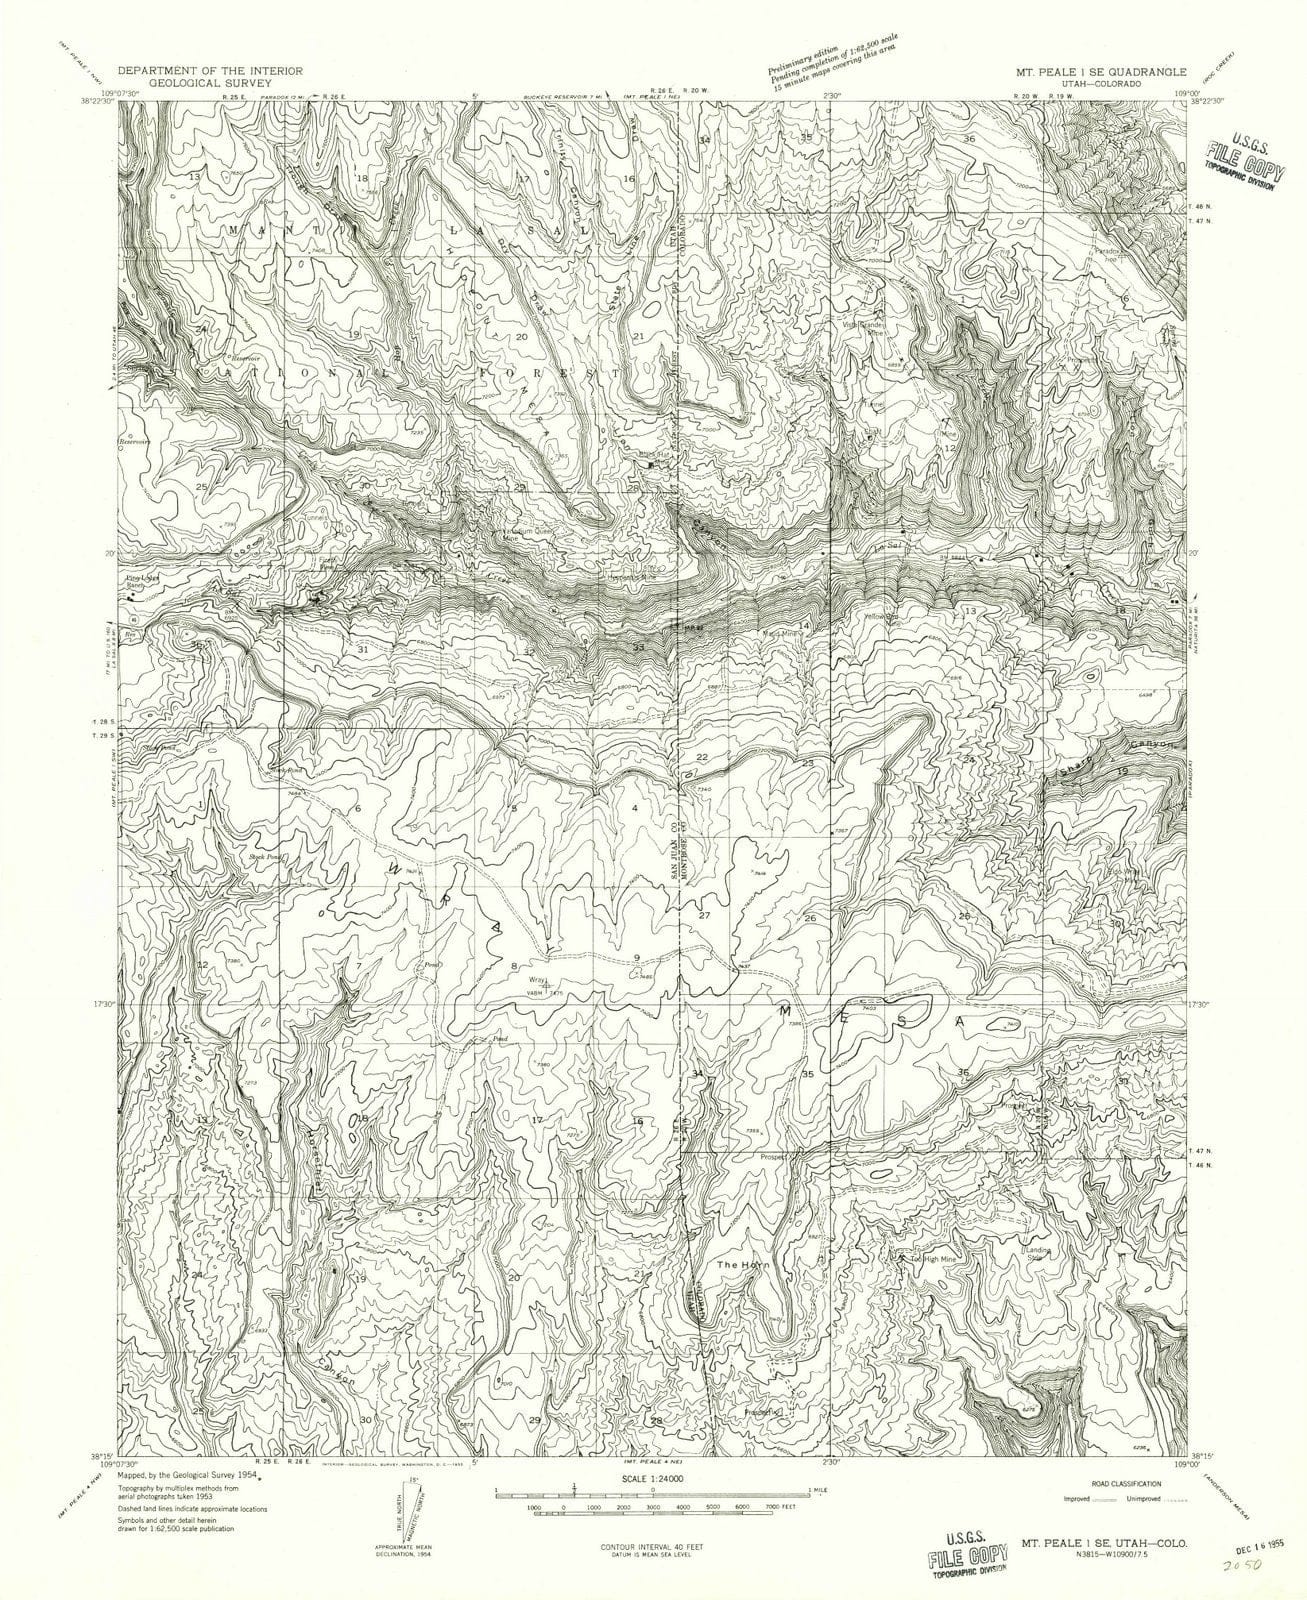 1954 Mt Peale 1, UT - Utah - USGS Topographic Map